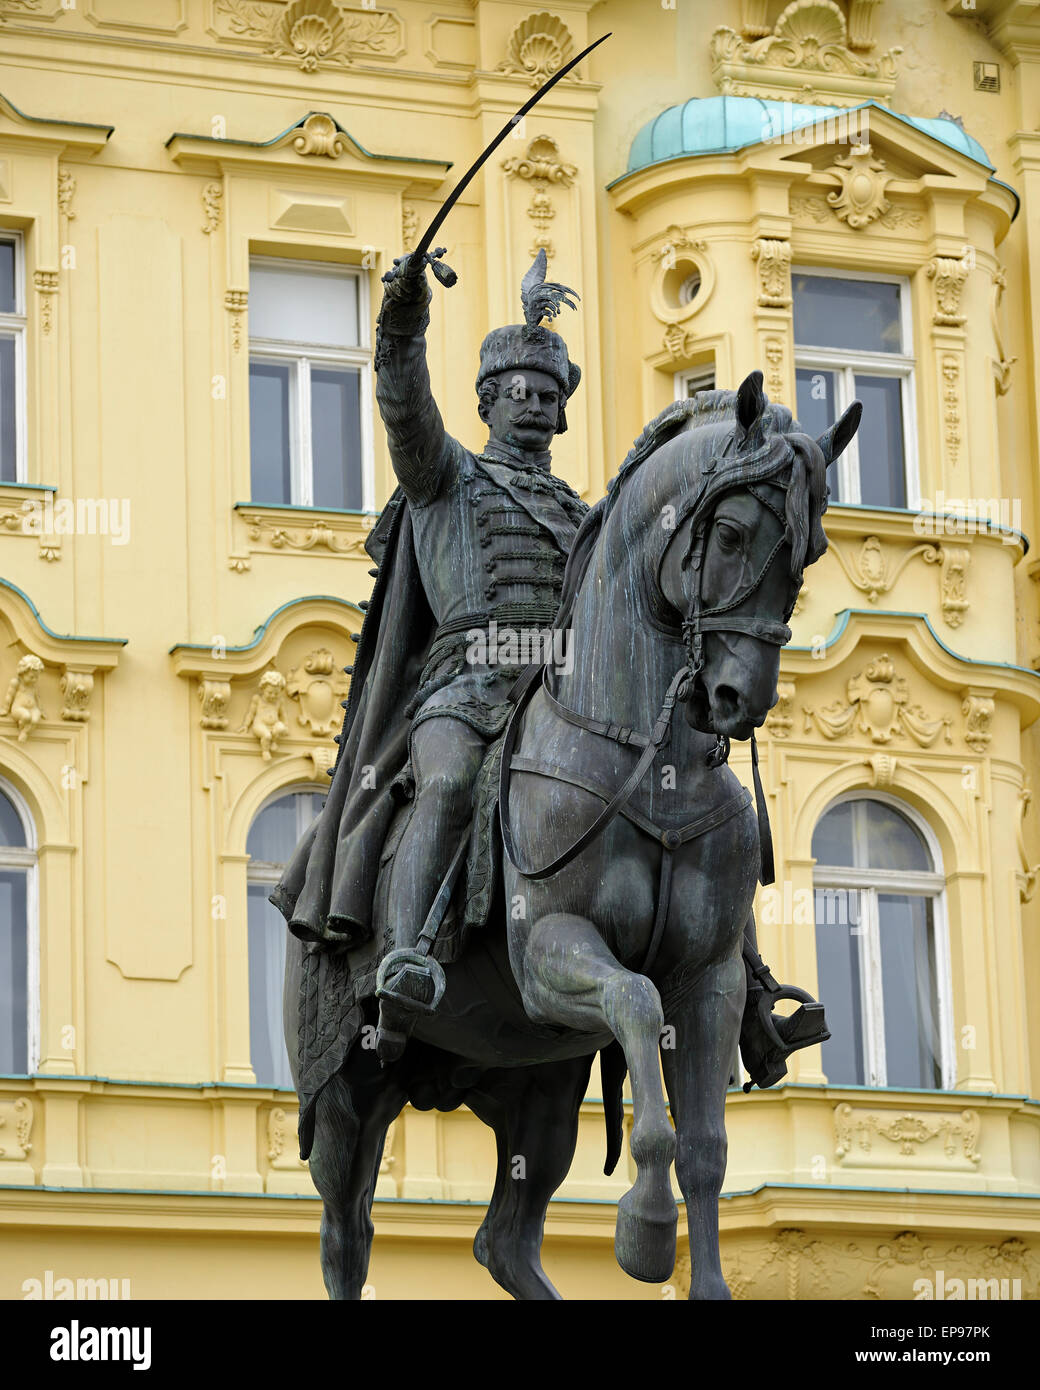 Estatua del rey Josip en la plaza Ban Jelacic, Zagreb, Croacia. Foto de stock